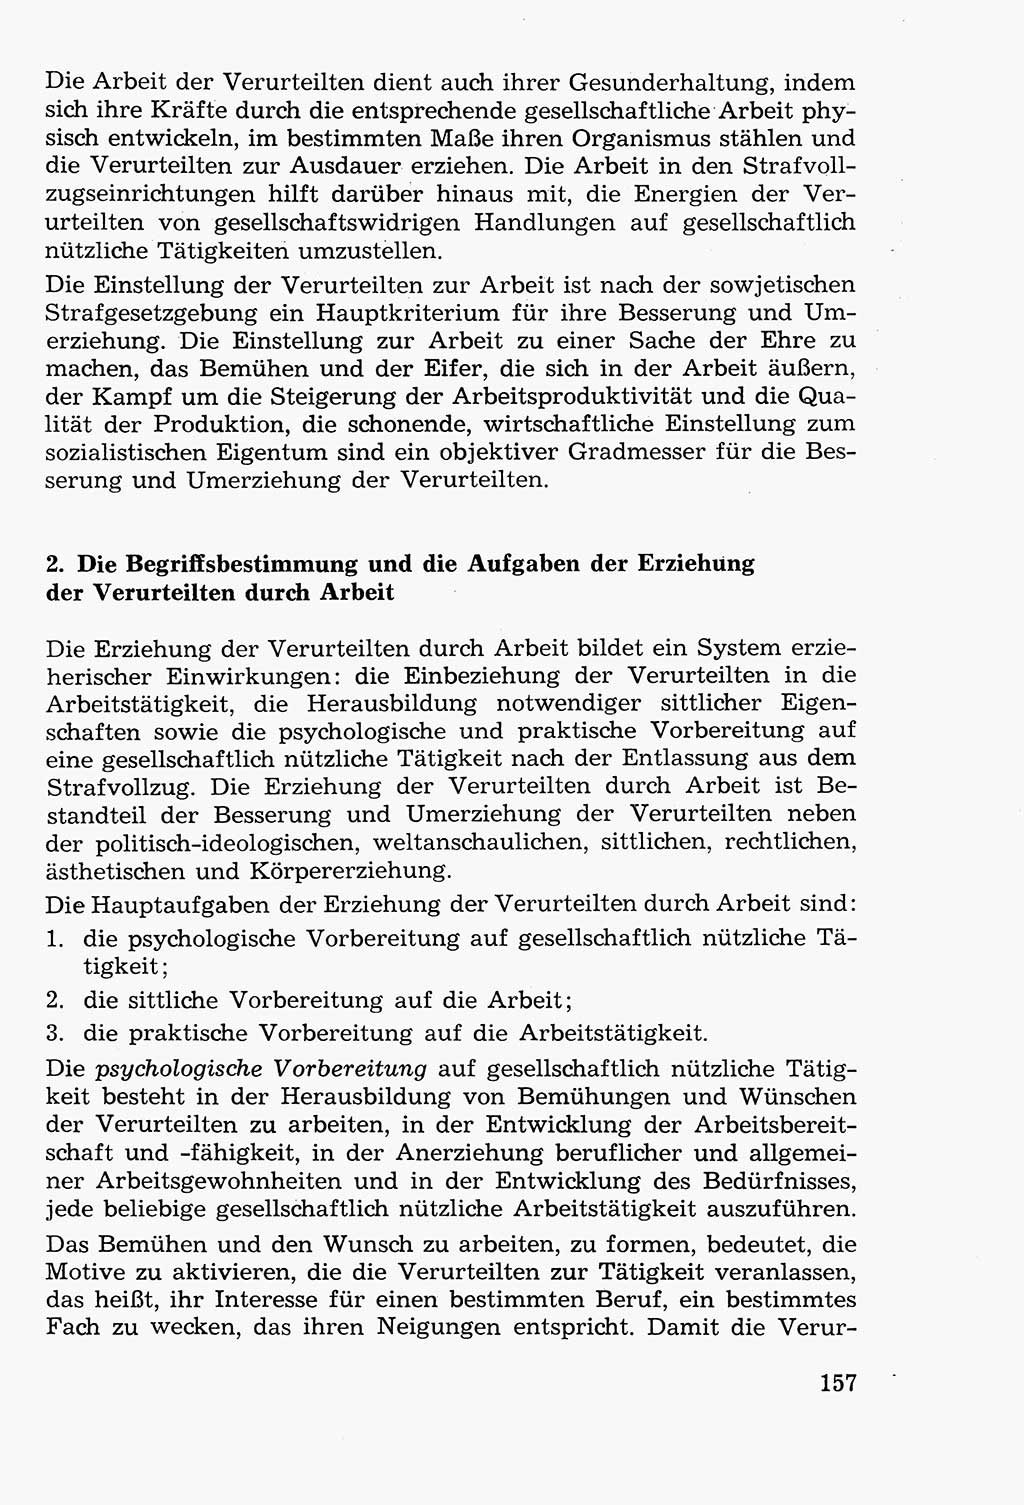 Lehrbuch der Strafvollzugspädagogik [Deutsche Demokratische Republik (DDR)] 1969, Seite 157 (Lb. SV-Pd. DDR 1969, S. 157)